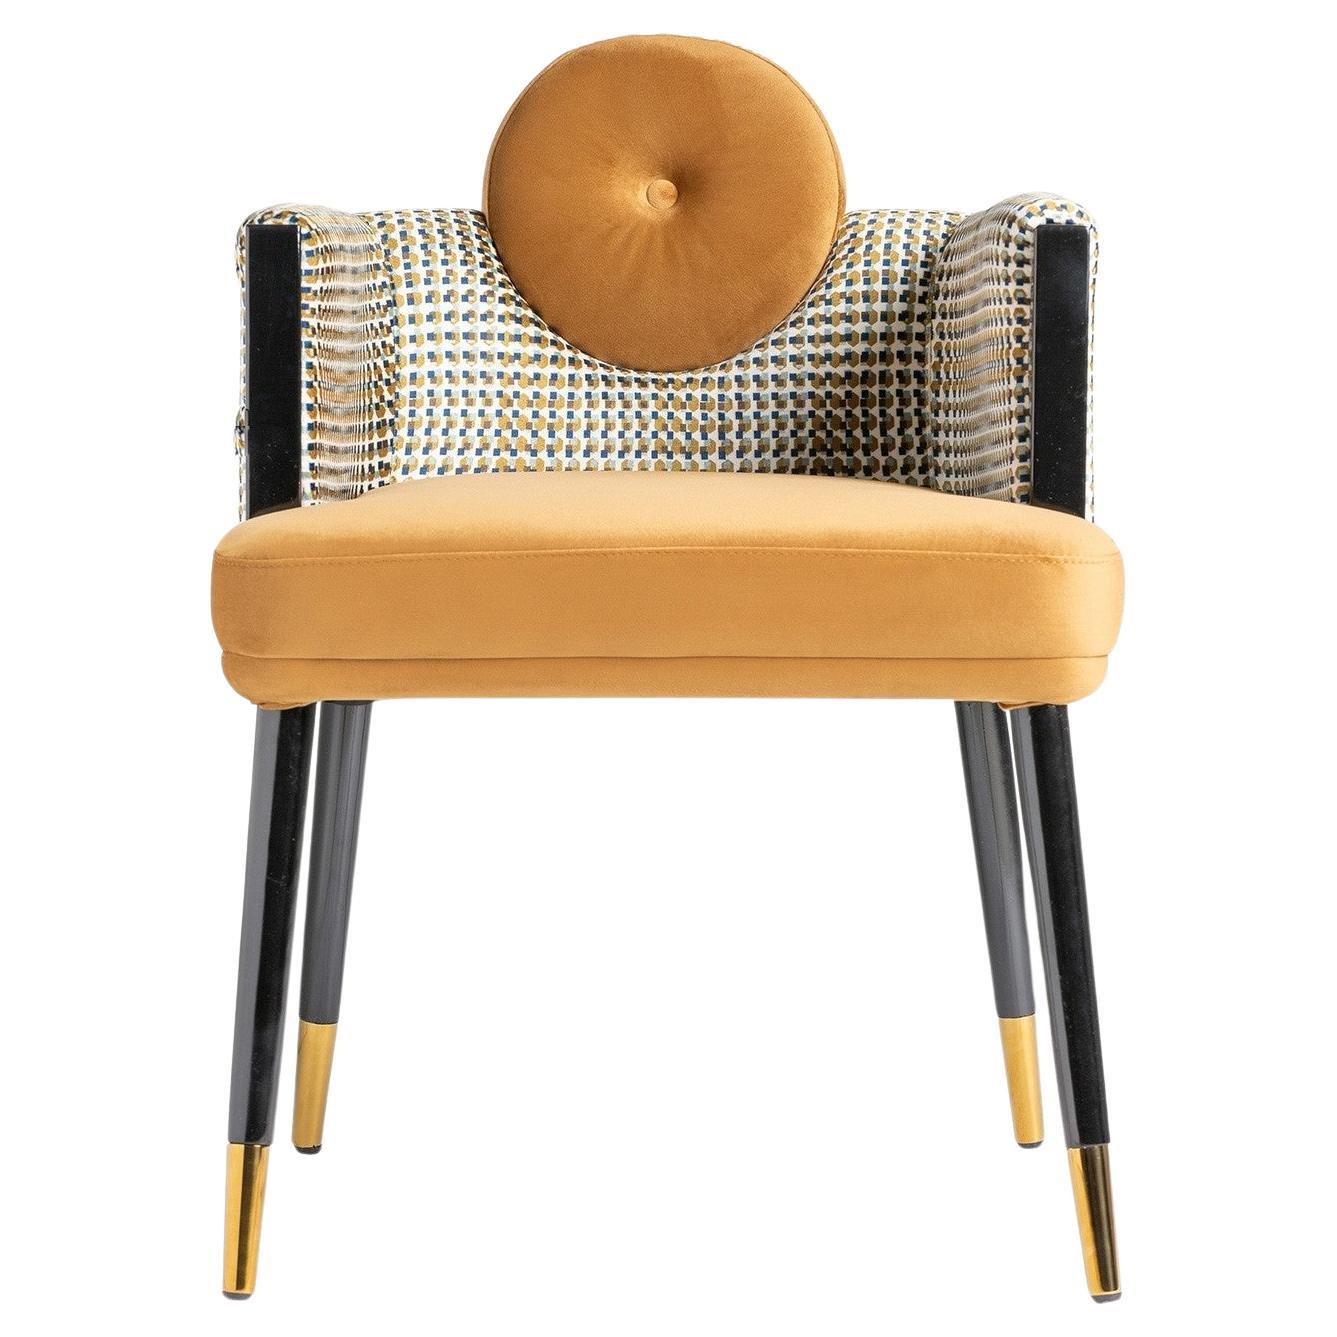 1980 Italian Design Style Black Lacquer Walnut Wooden and Velvet Chair (Chaise en bois, laque noire et velours)